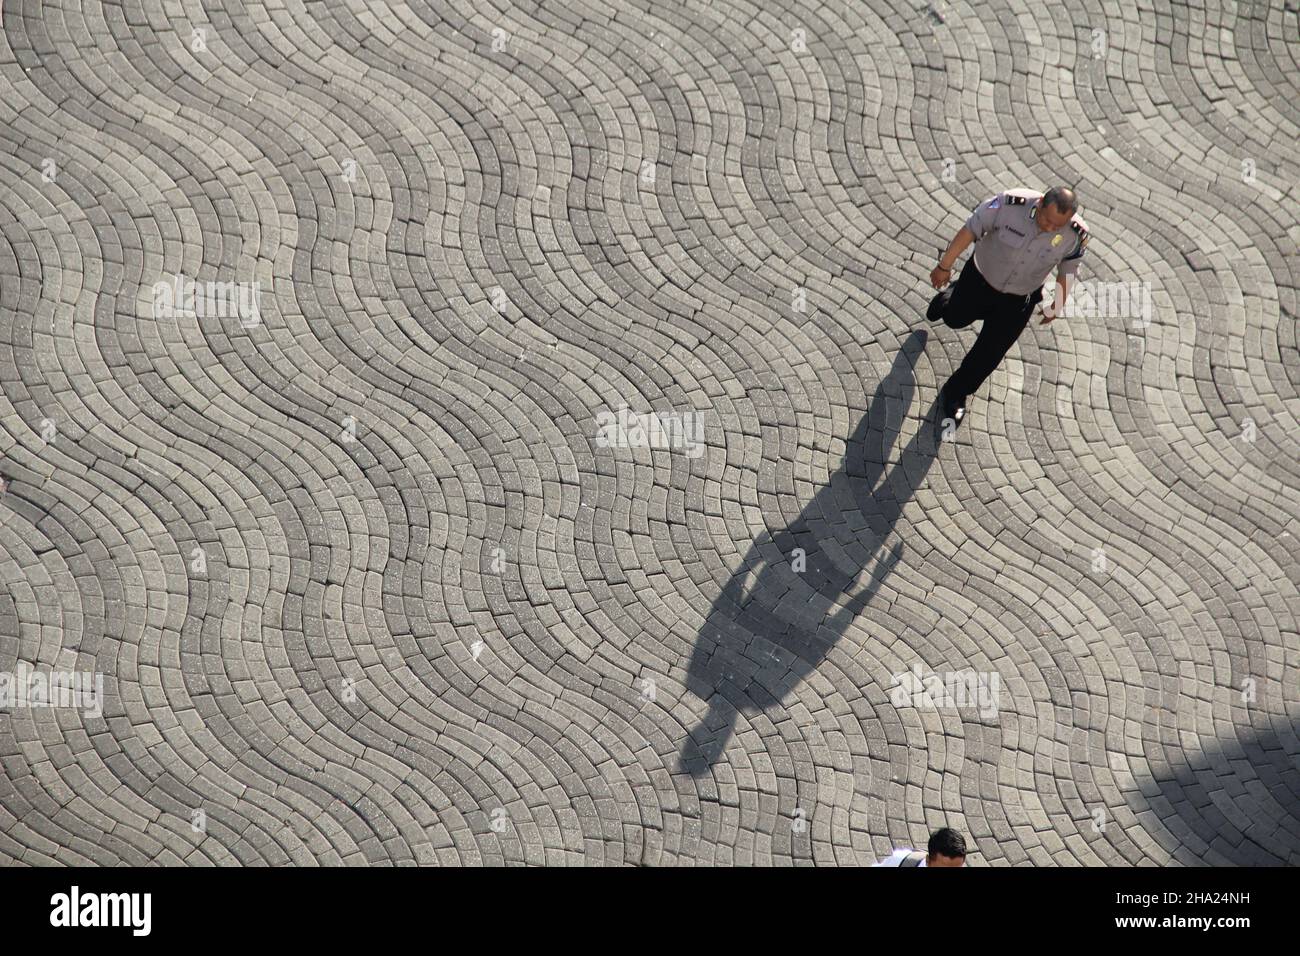 SURABAYA - INDONÉSIE : octobre 27.les gens marchent sur la chaussée piétonne en béton (grand angle de vue aérienne de dessus).Idéal pour les rues. Banque D'Images